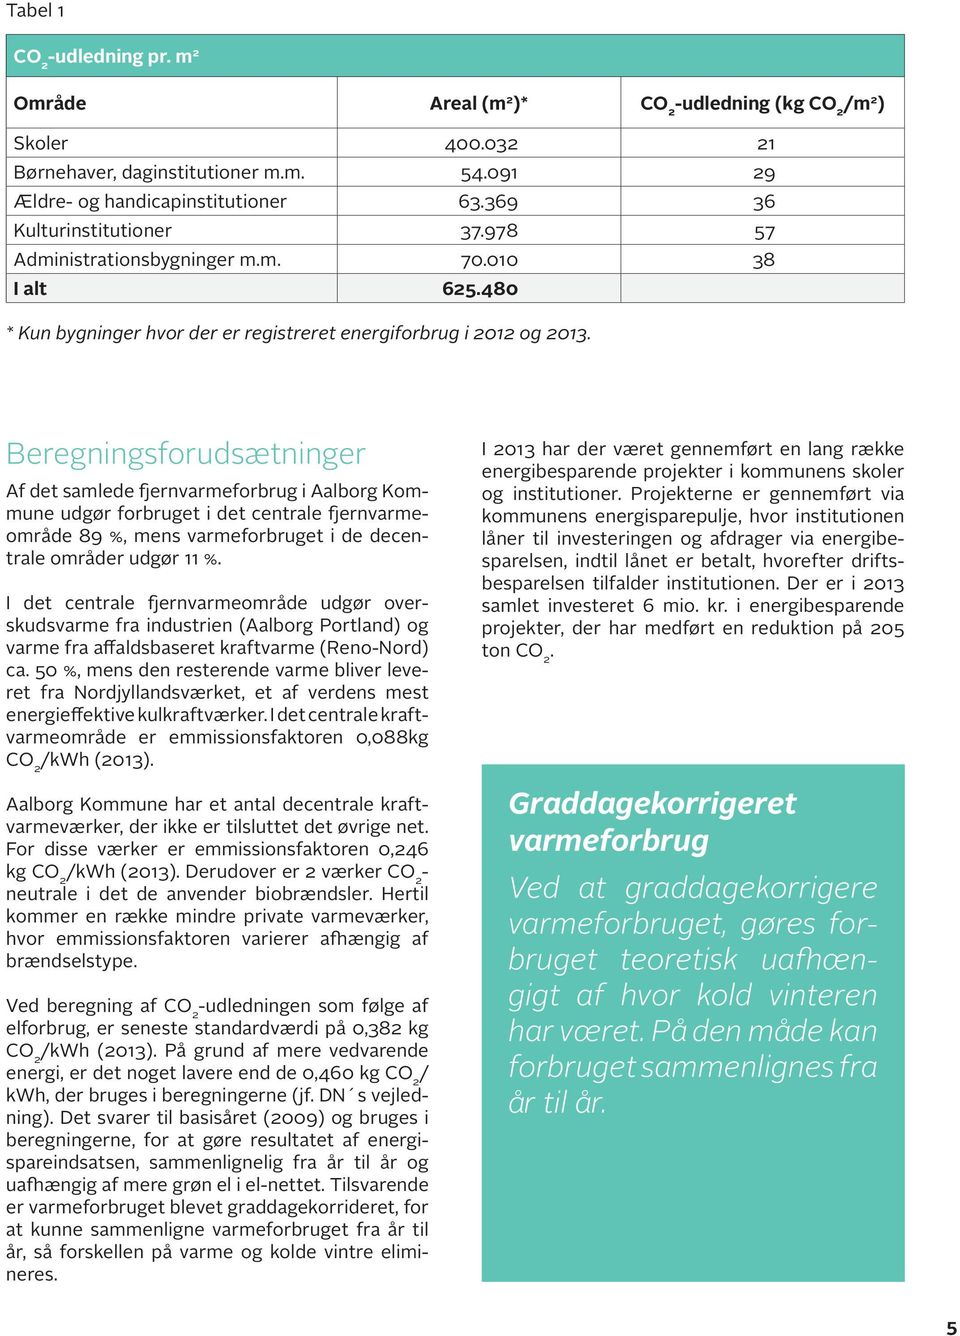 Beregningsforudsætninger Af det samlede fjernvarmeforbrug i Aalborg Kommune udgør forbruget i det centrale fjernvarmeområde 89 %, mens varmeforbruget i de decentrale områder udgør 11 %.